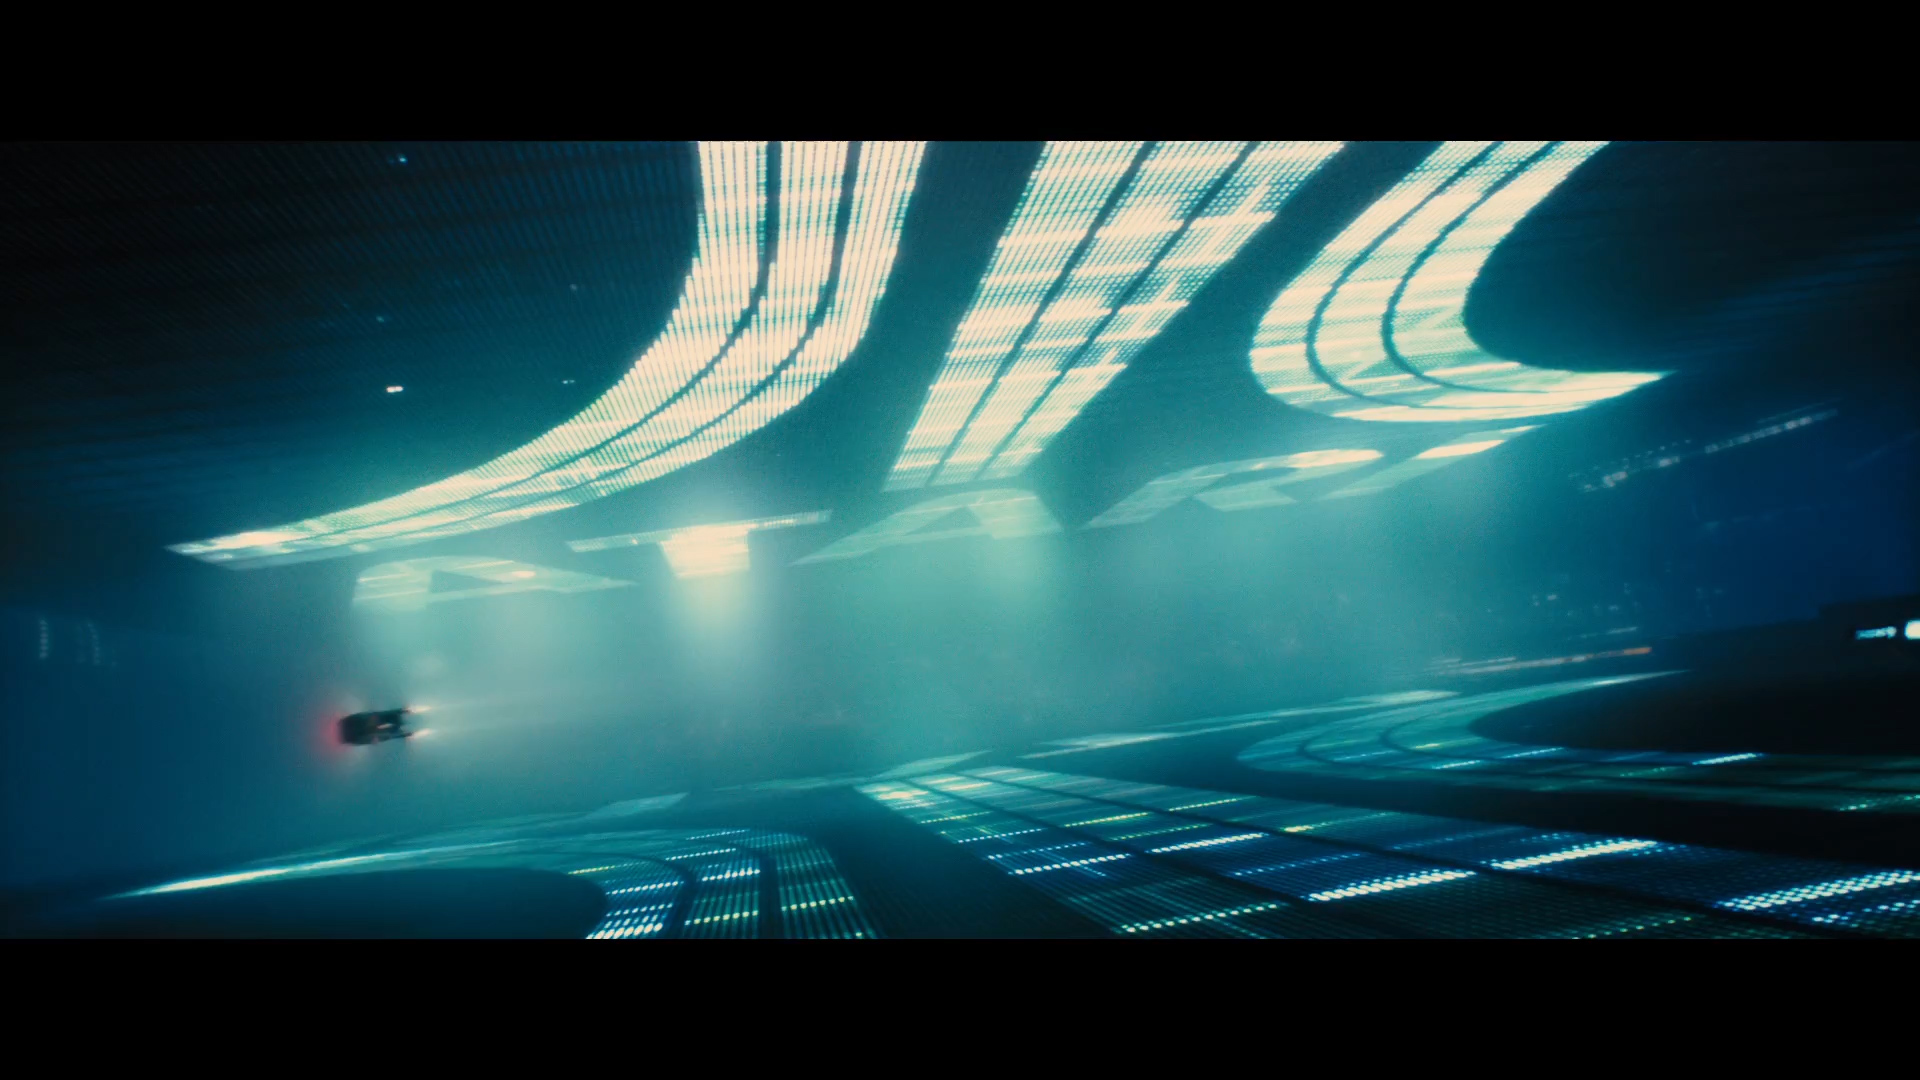 Blade Runner 2049 Trailer Wallpapers   Album on Imgur